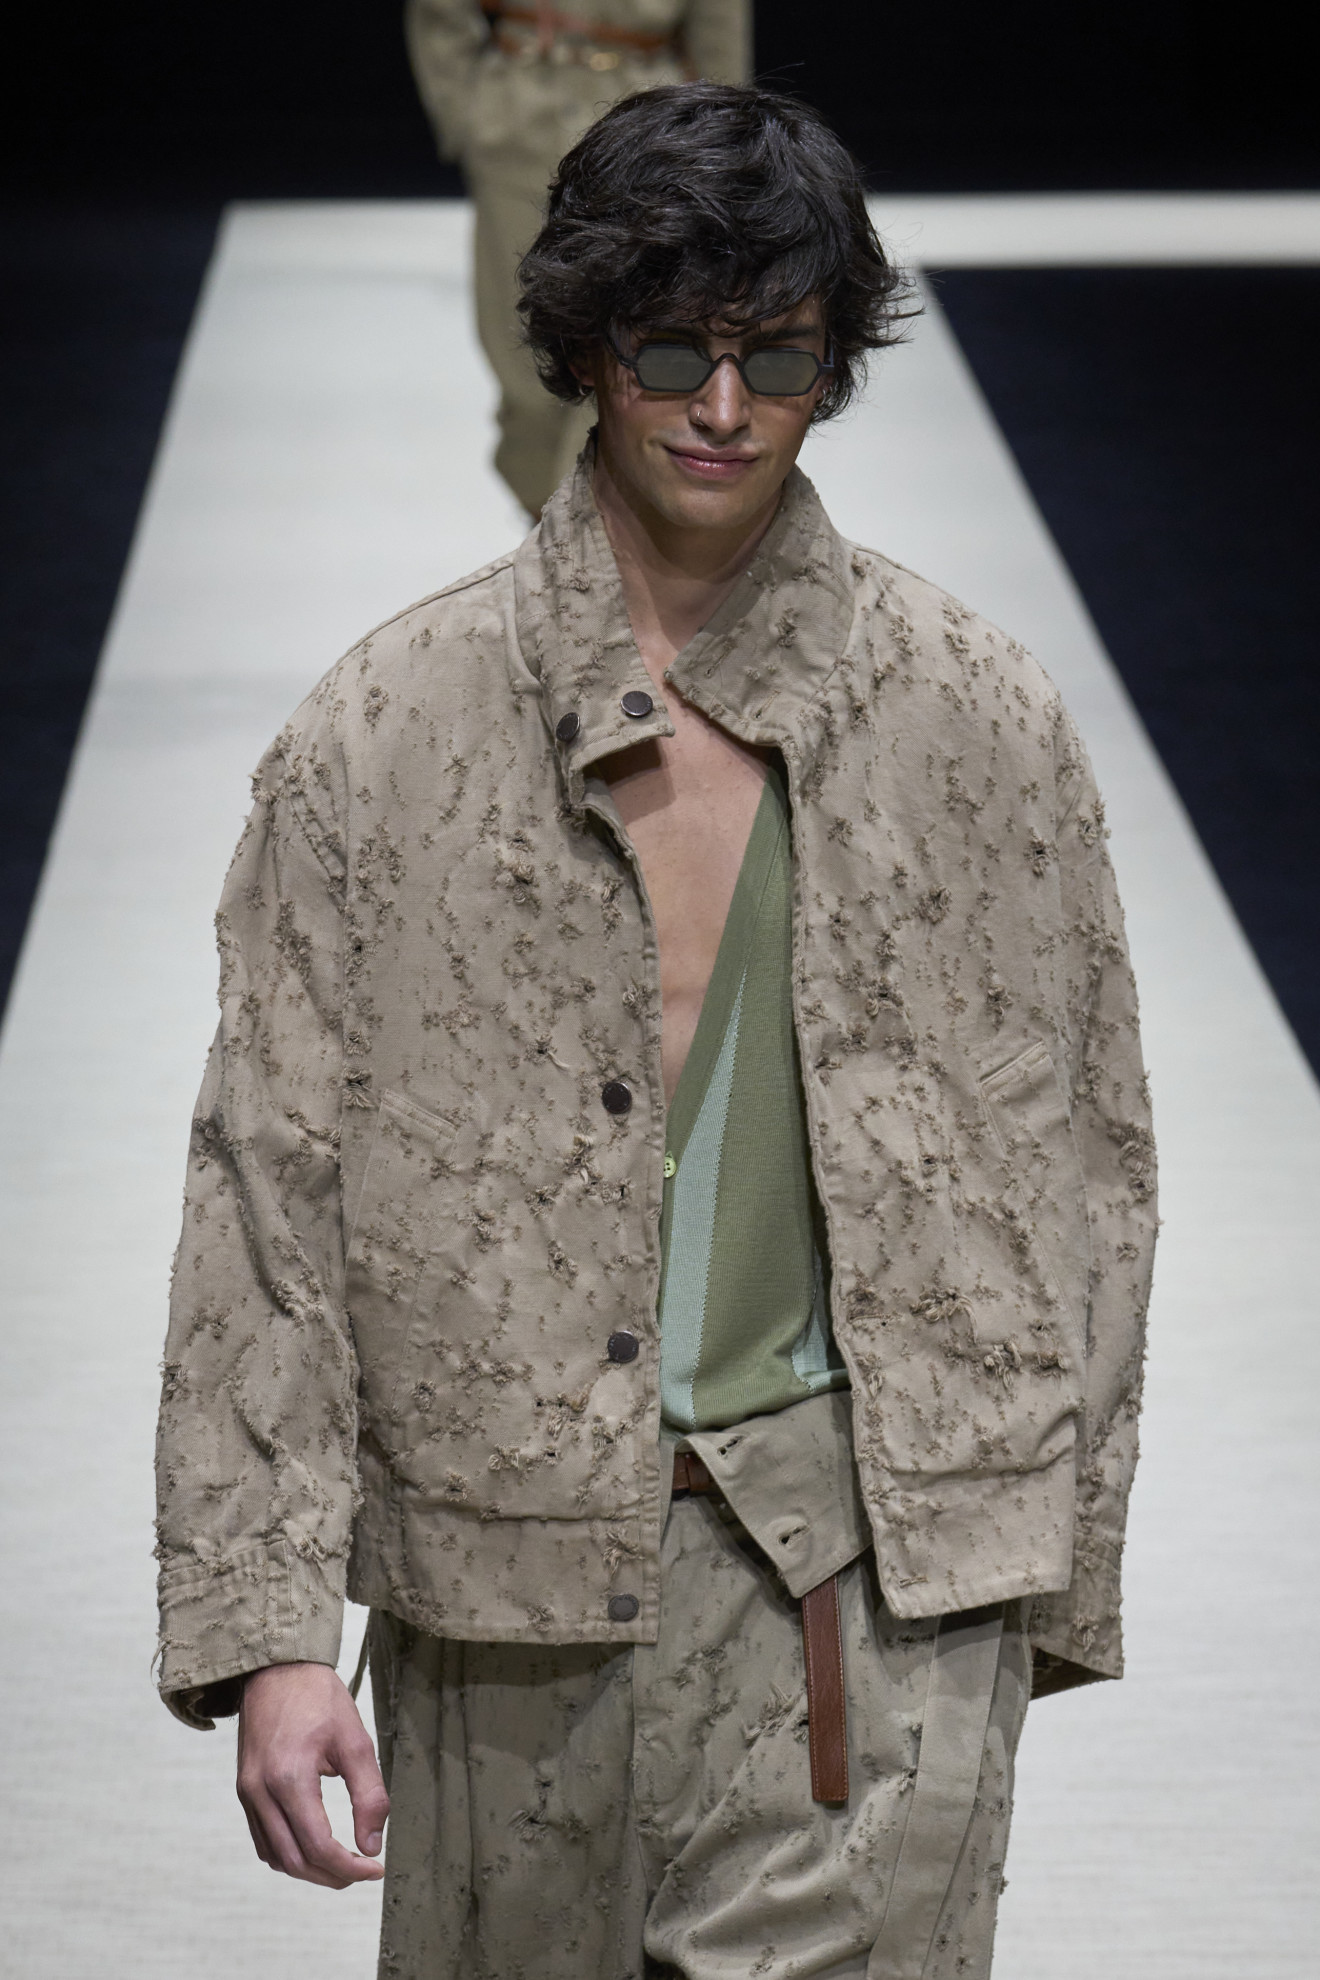 Денди, преппи и дуализм: в Милане стартовала Неделя мужской моды